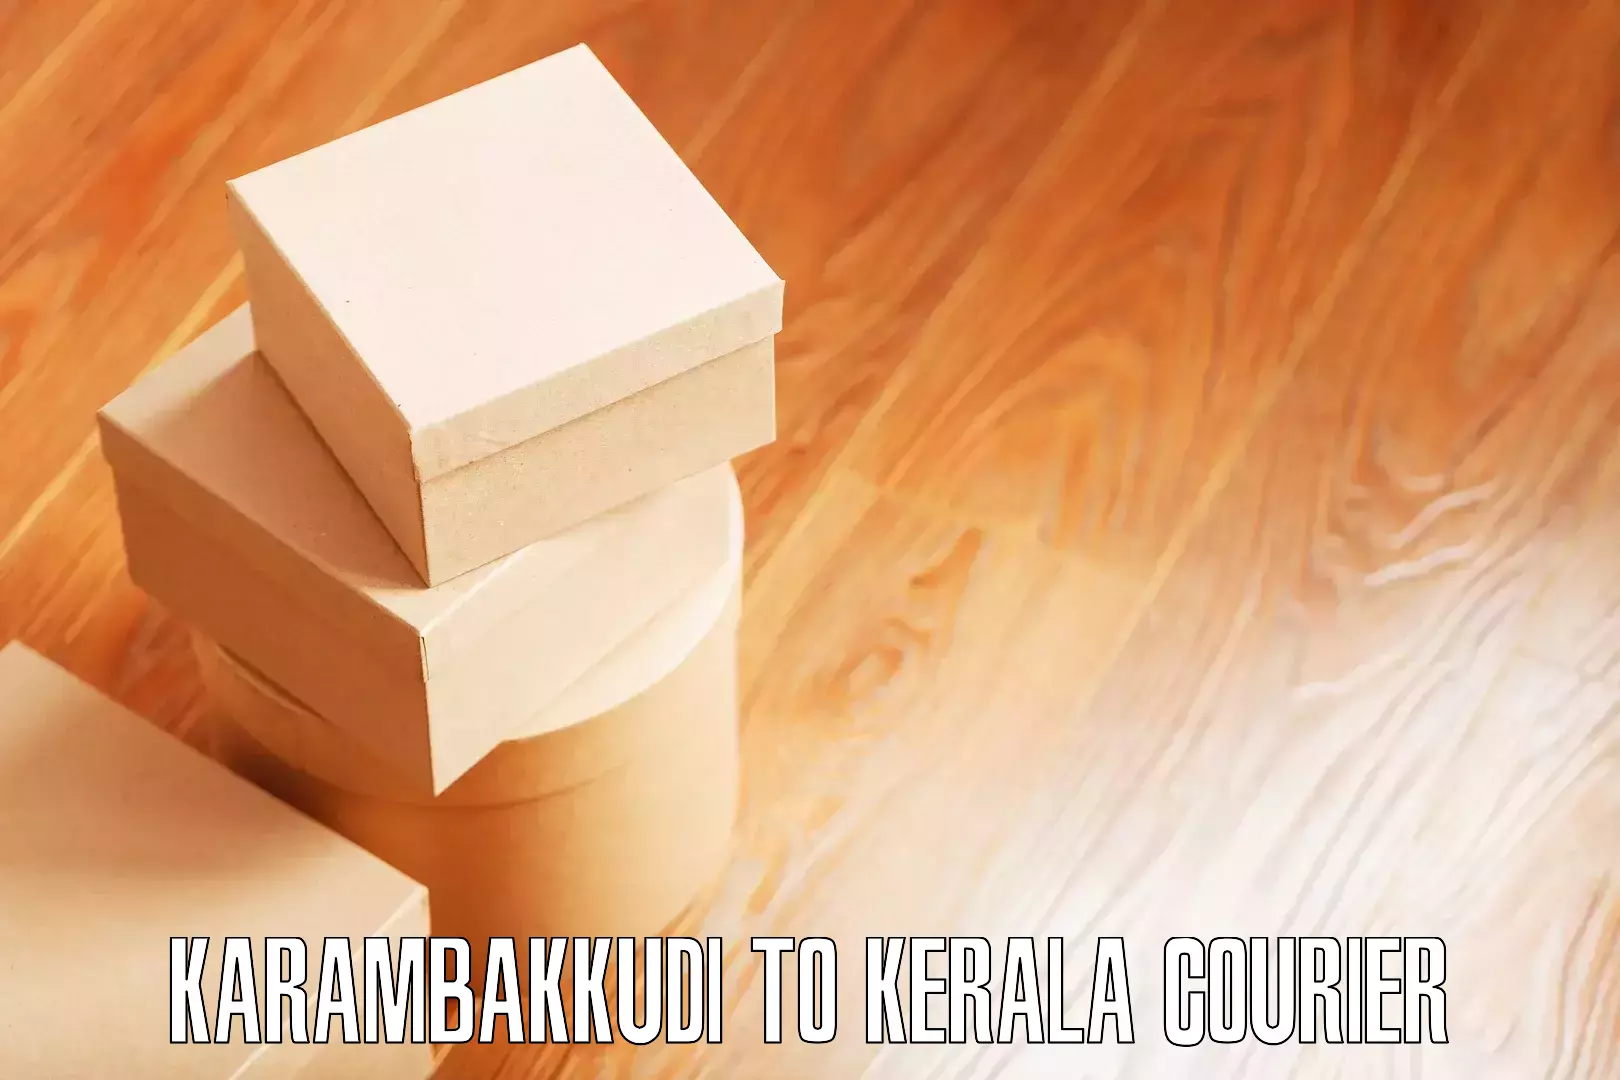 Furniture moving assistance Karambakkudi to Karunagappally